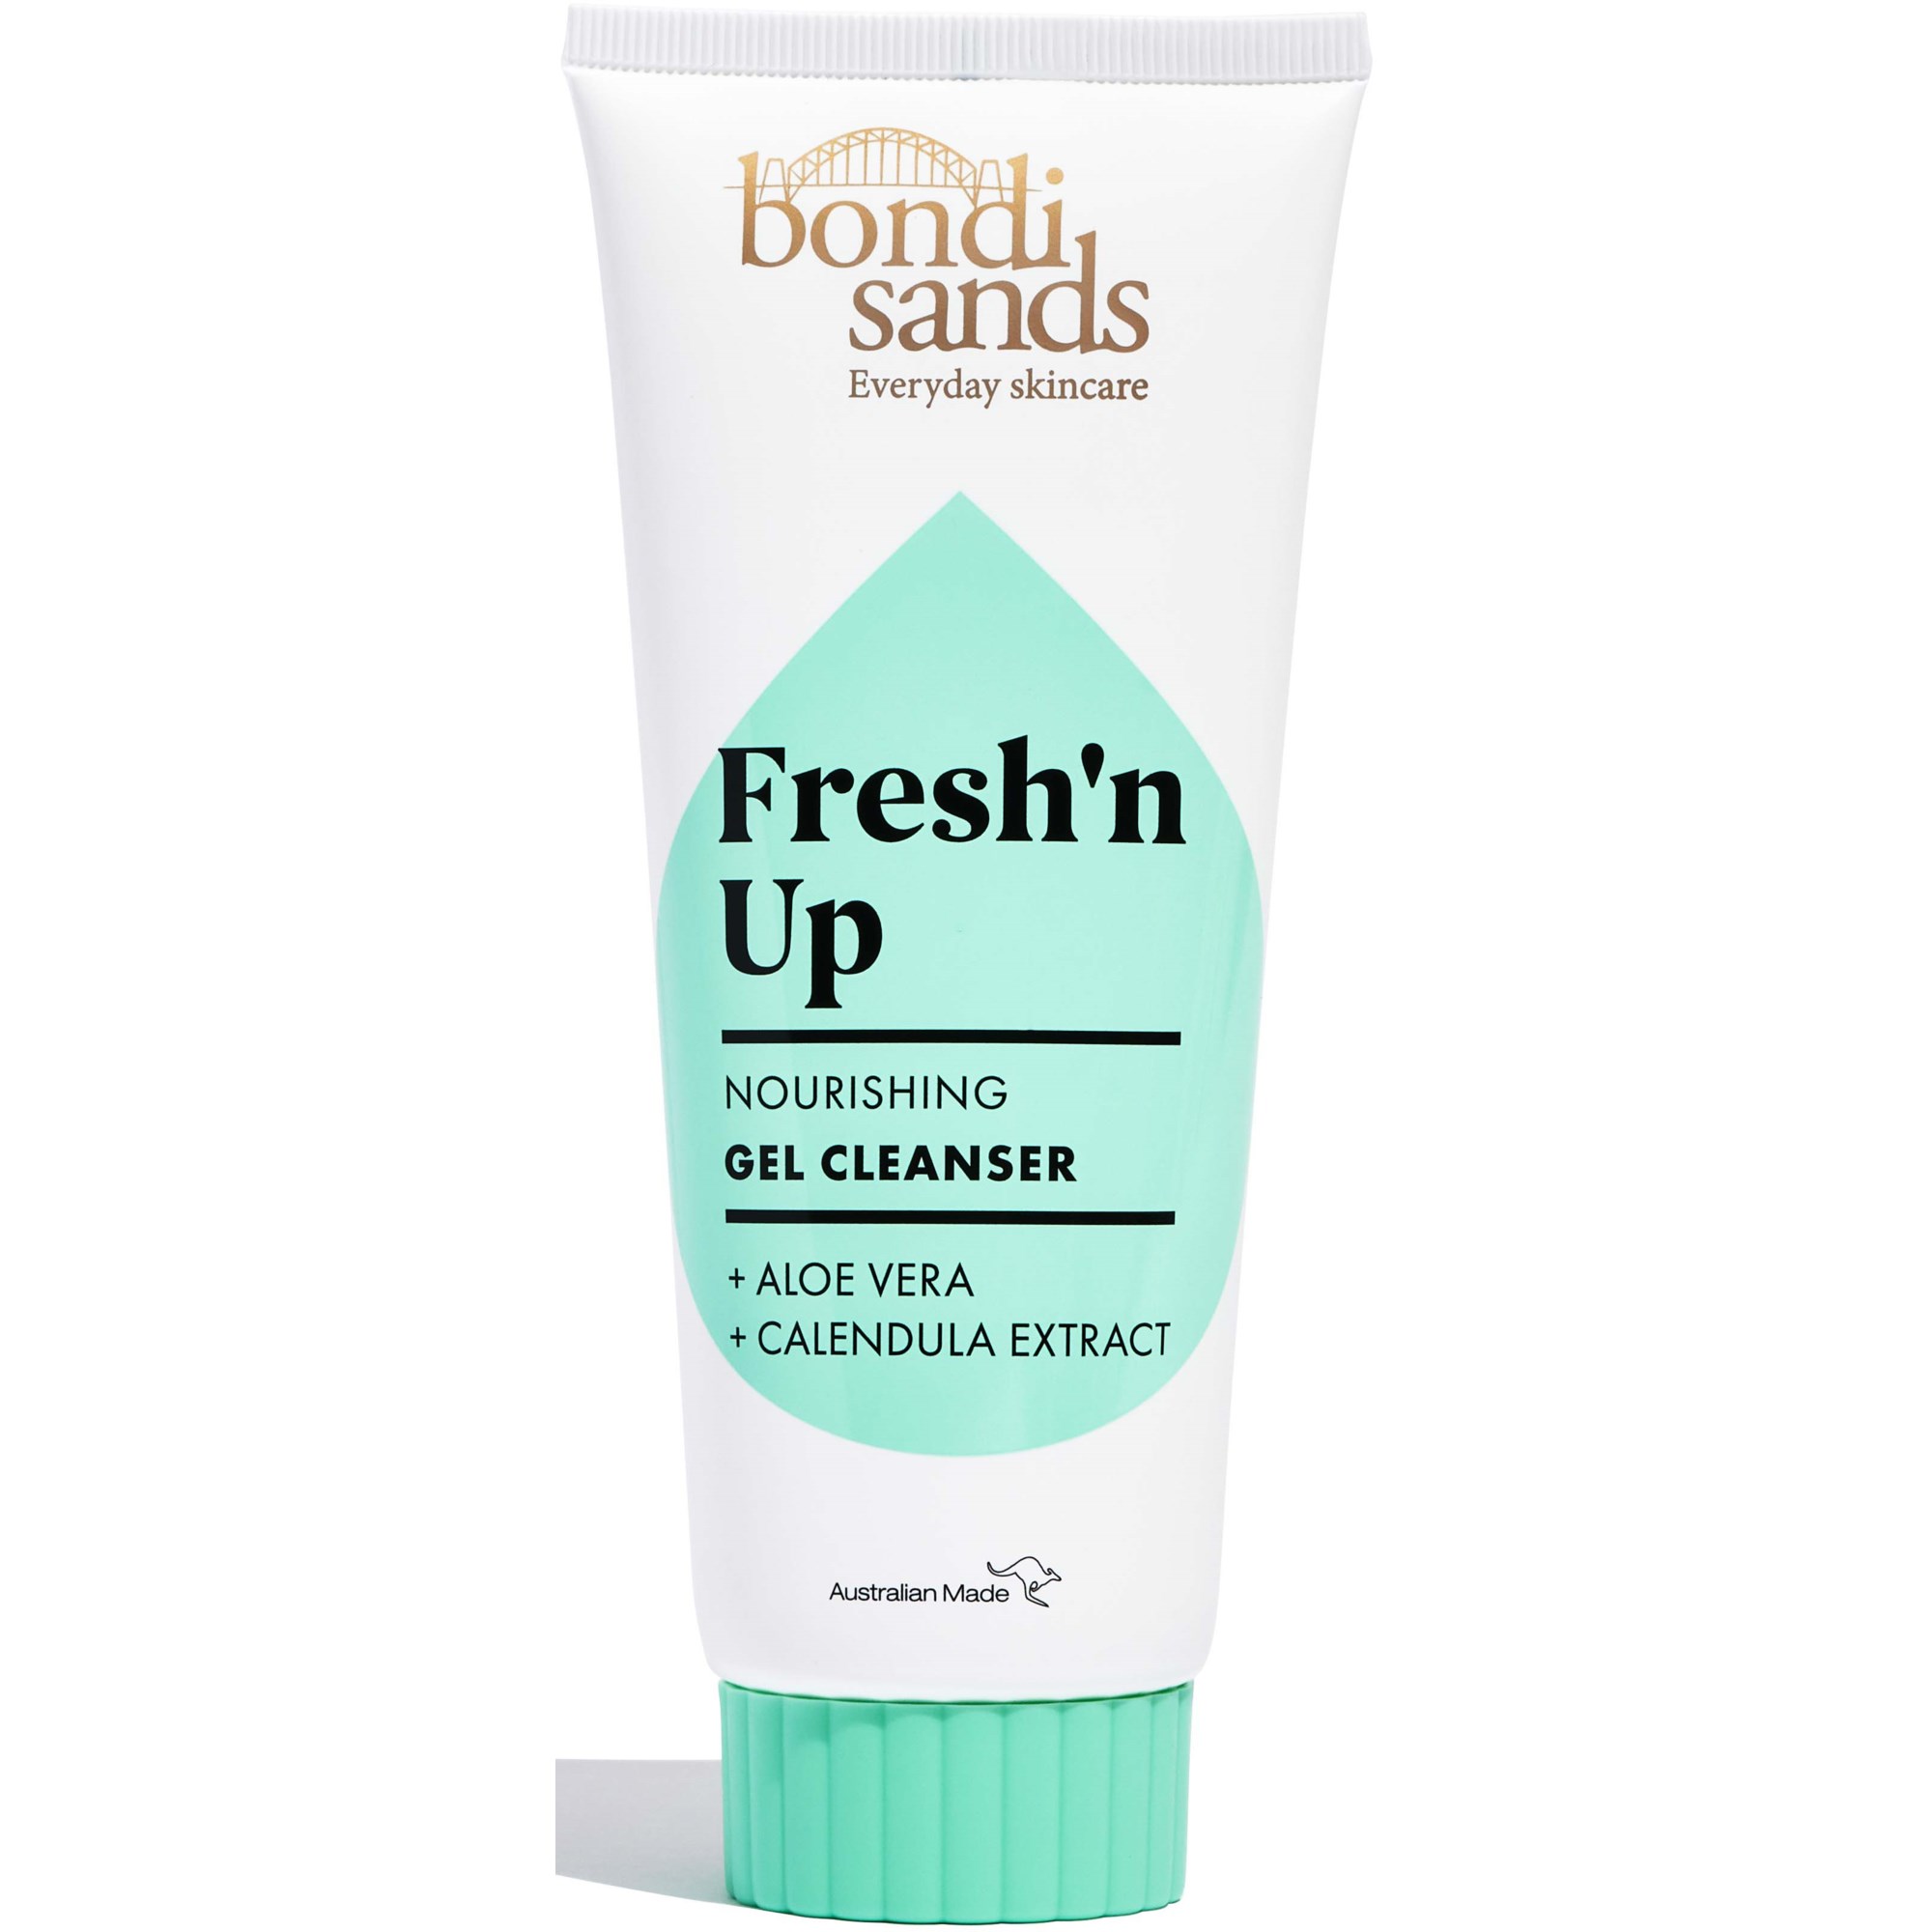 Bondi Sands Freshn Up Gel Cleanser 150 ml